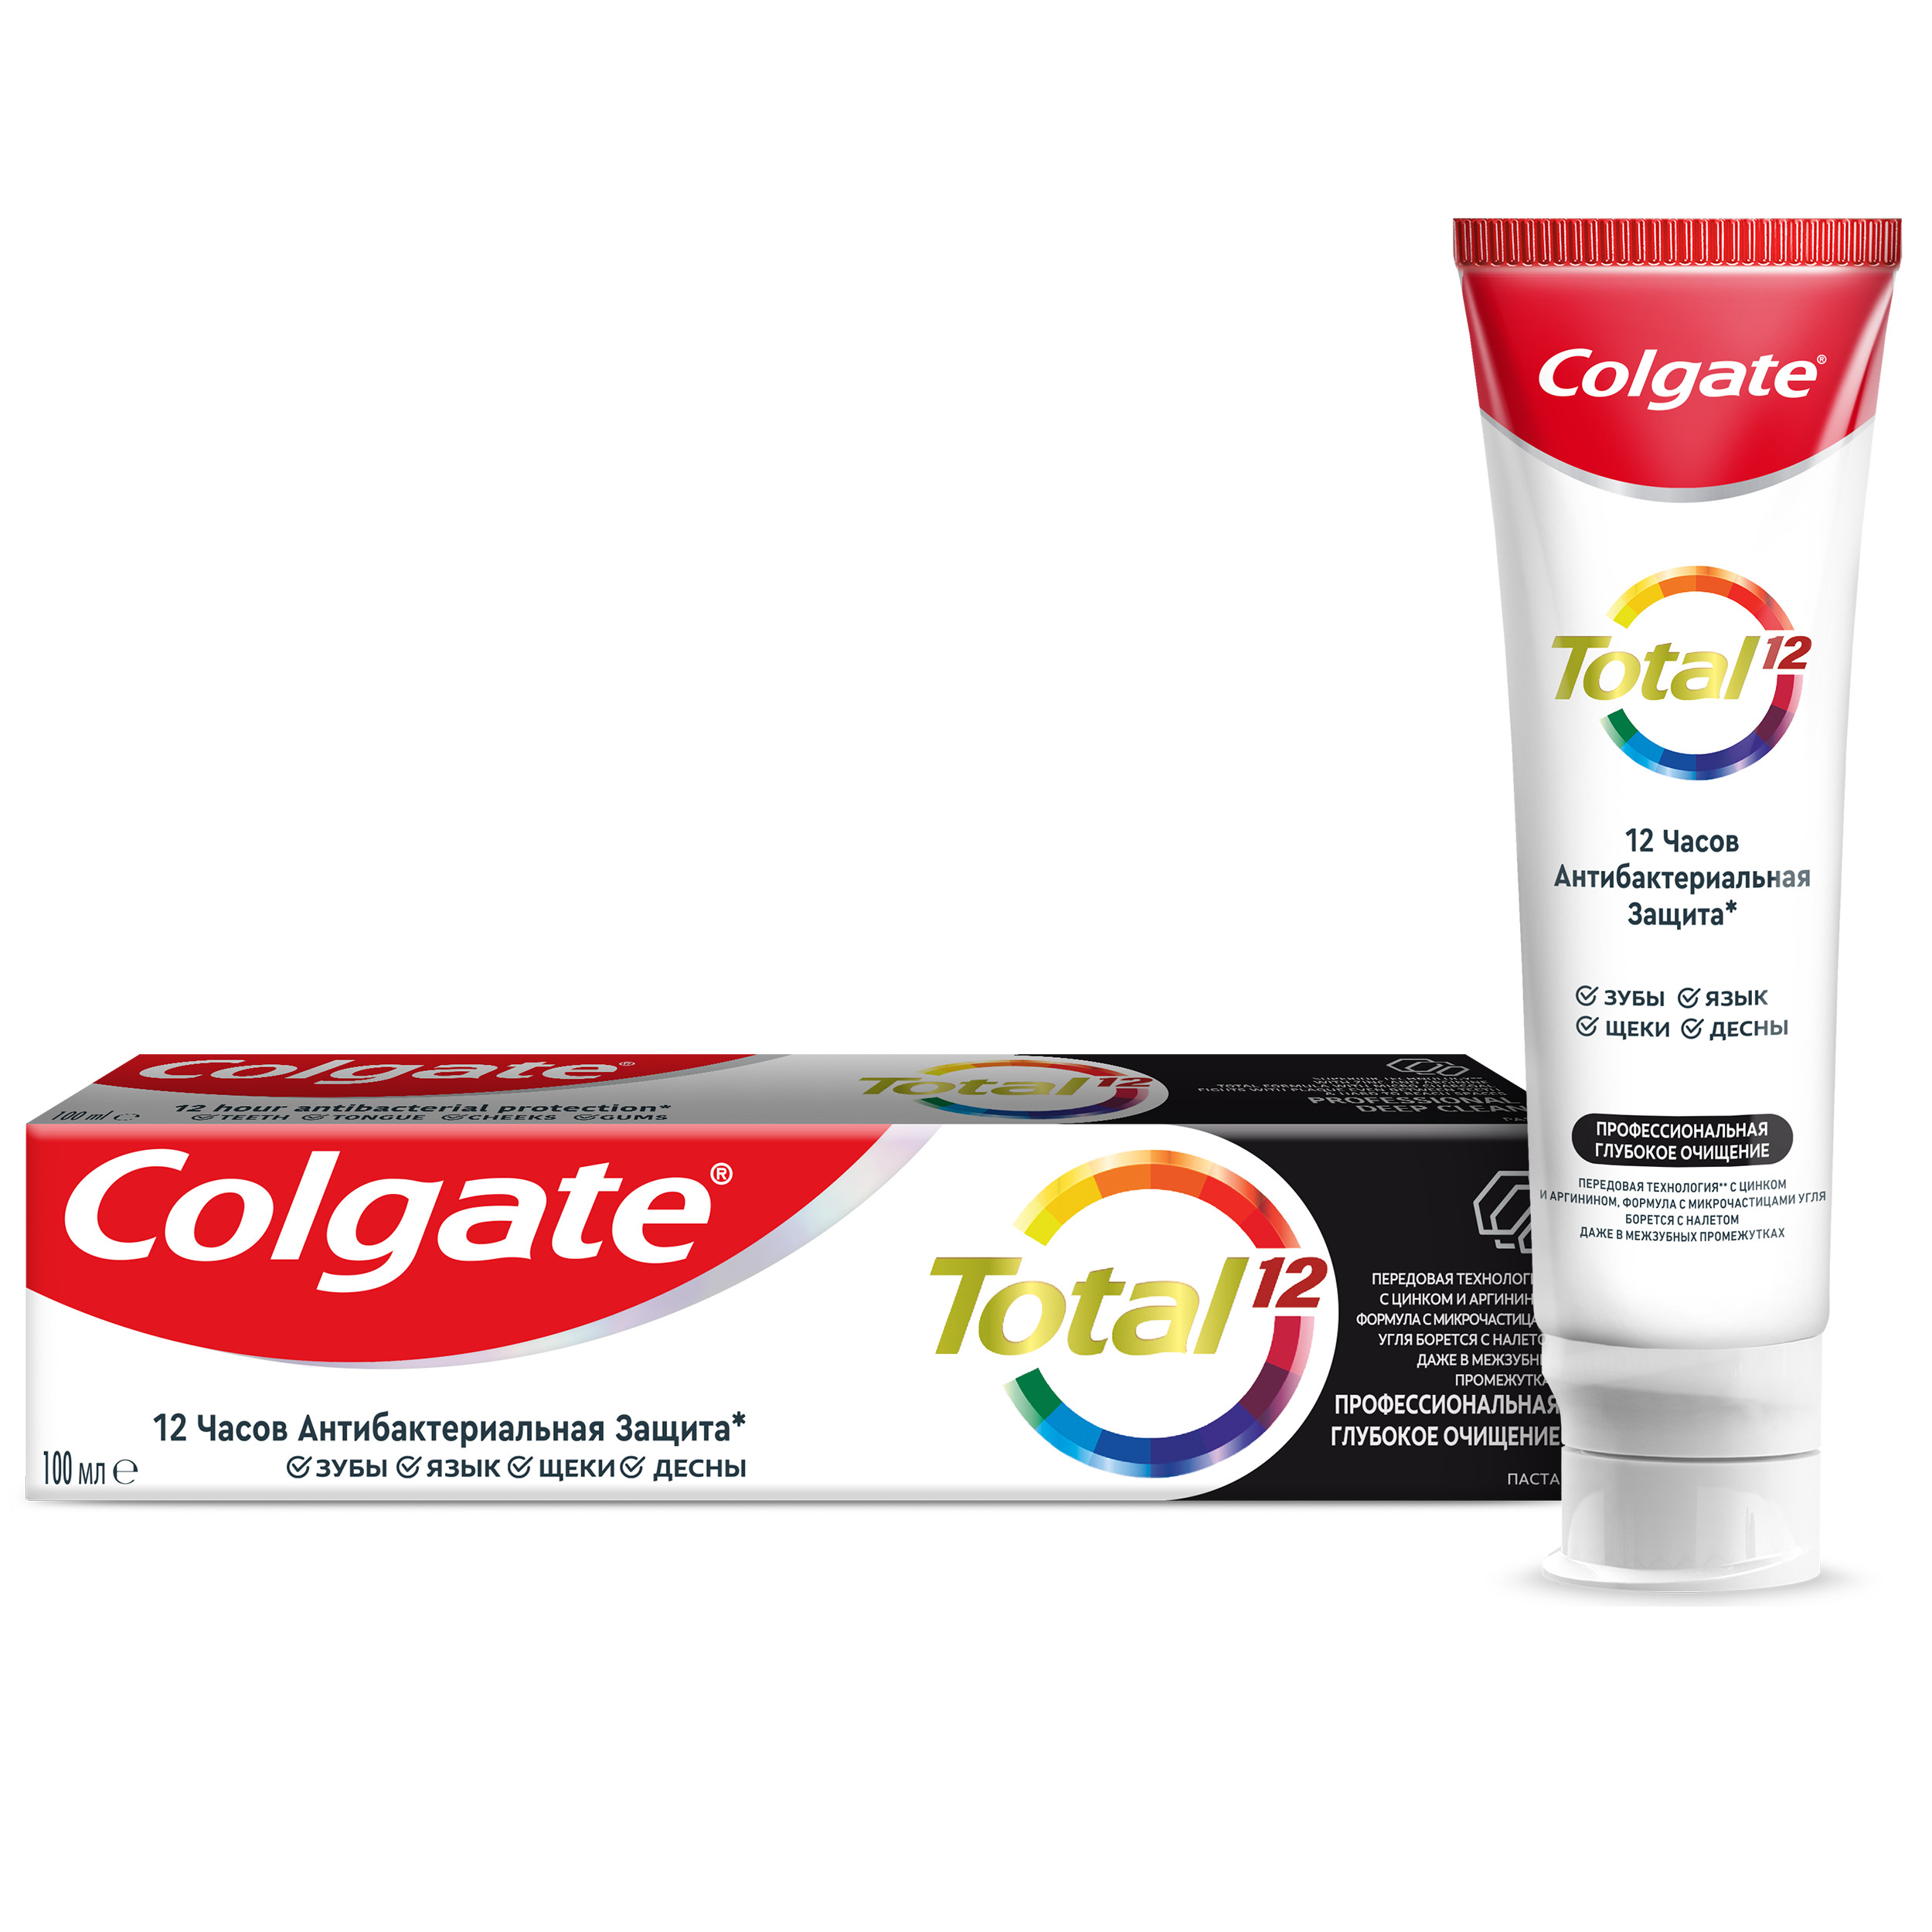 Паста зубная Colgate Total 12 Профессиональная глубокое очищение с древесным углём, 100 мл colgate зубная щетка зигзаг древесный уголь средняя 2 1